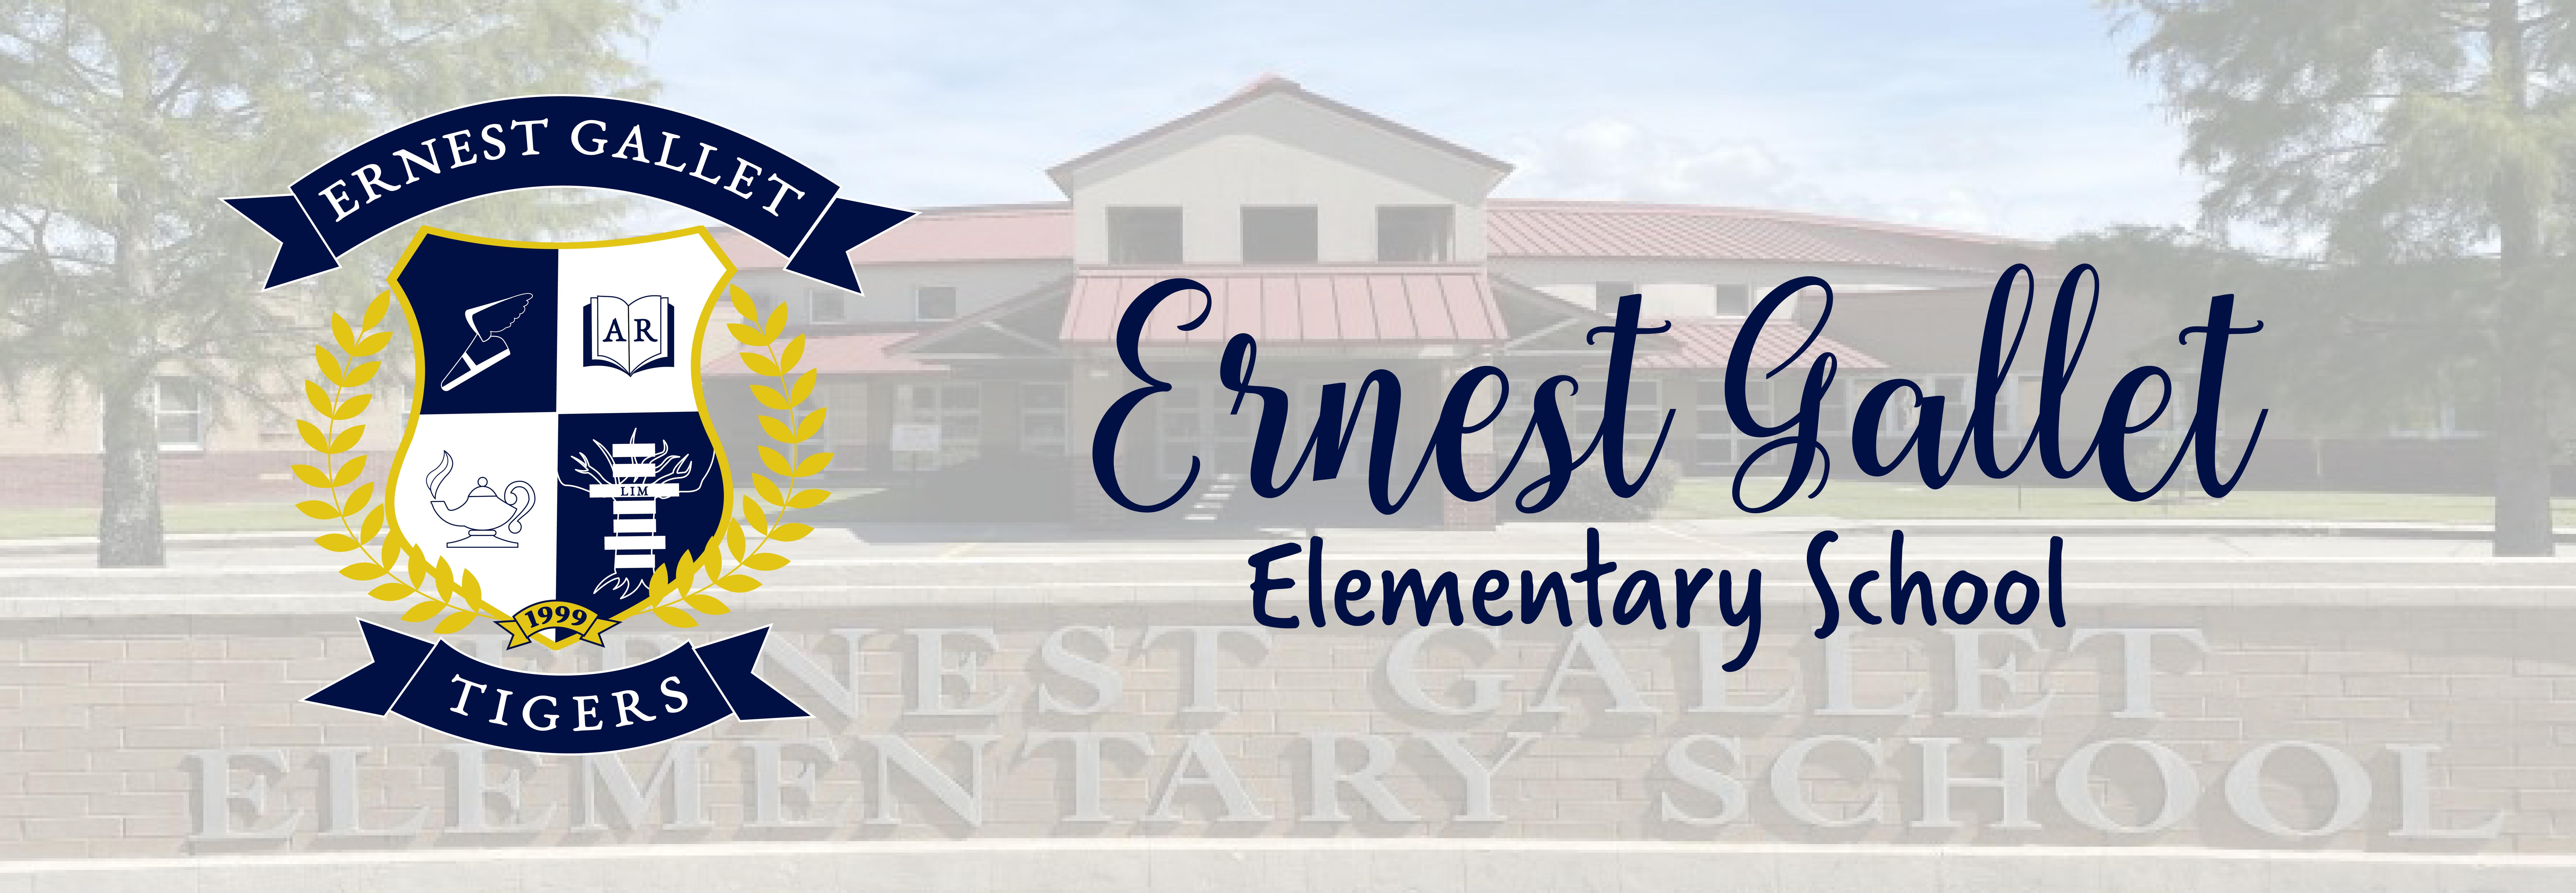 Ernest Gallet Elementary School banner